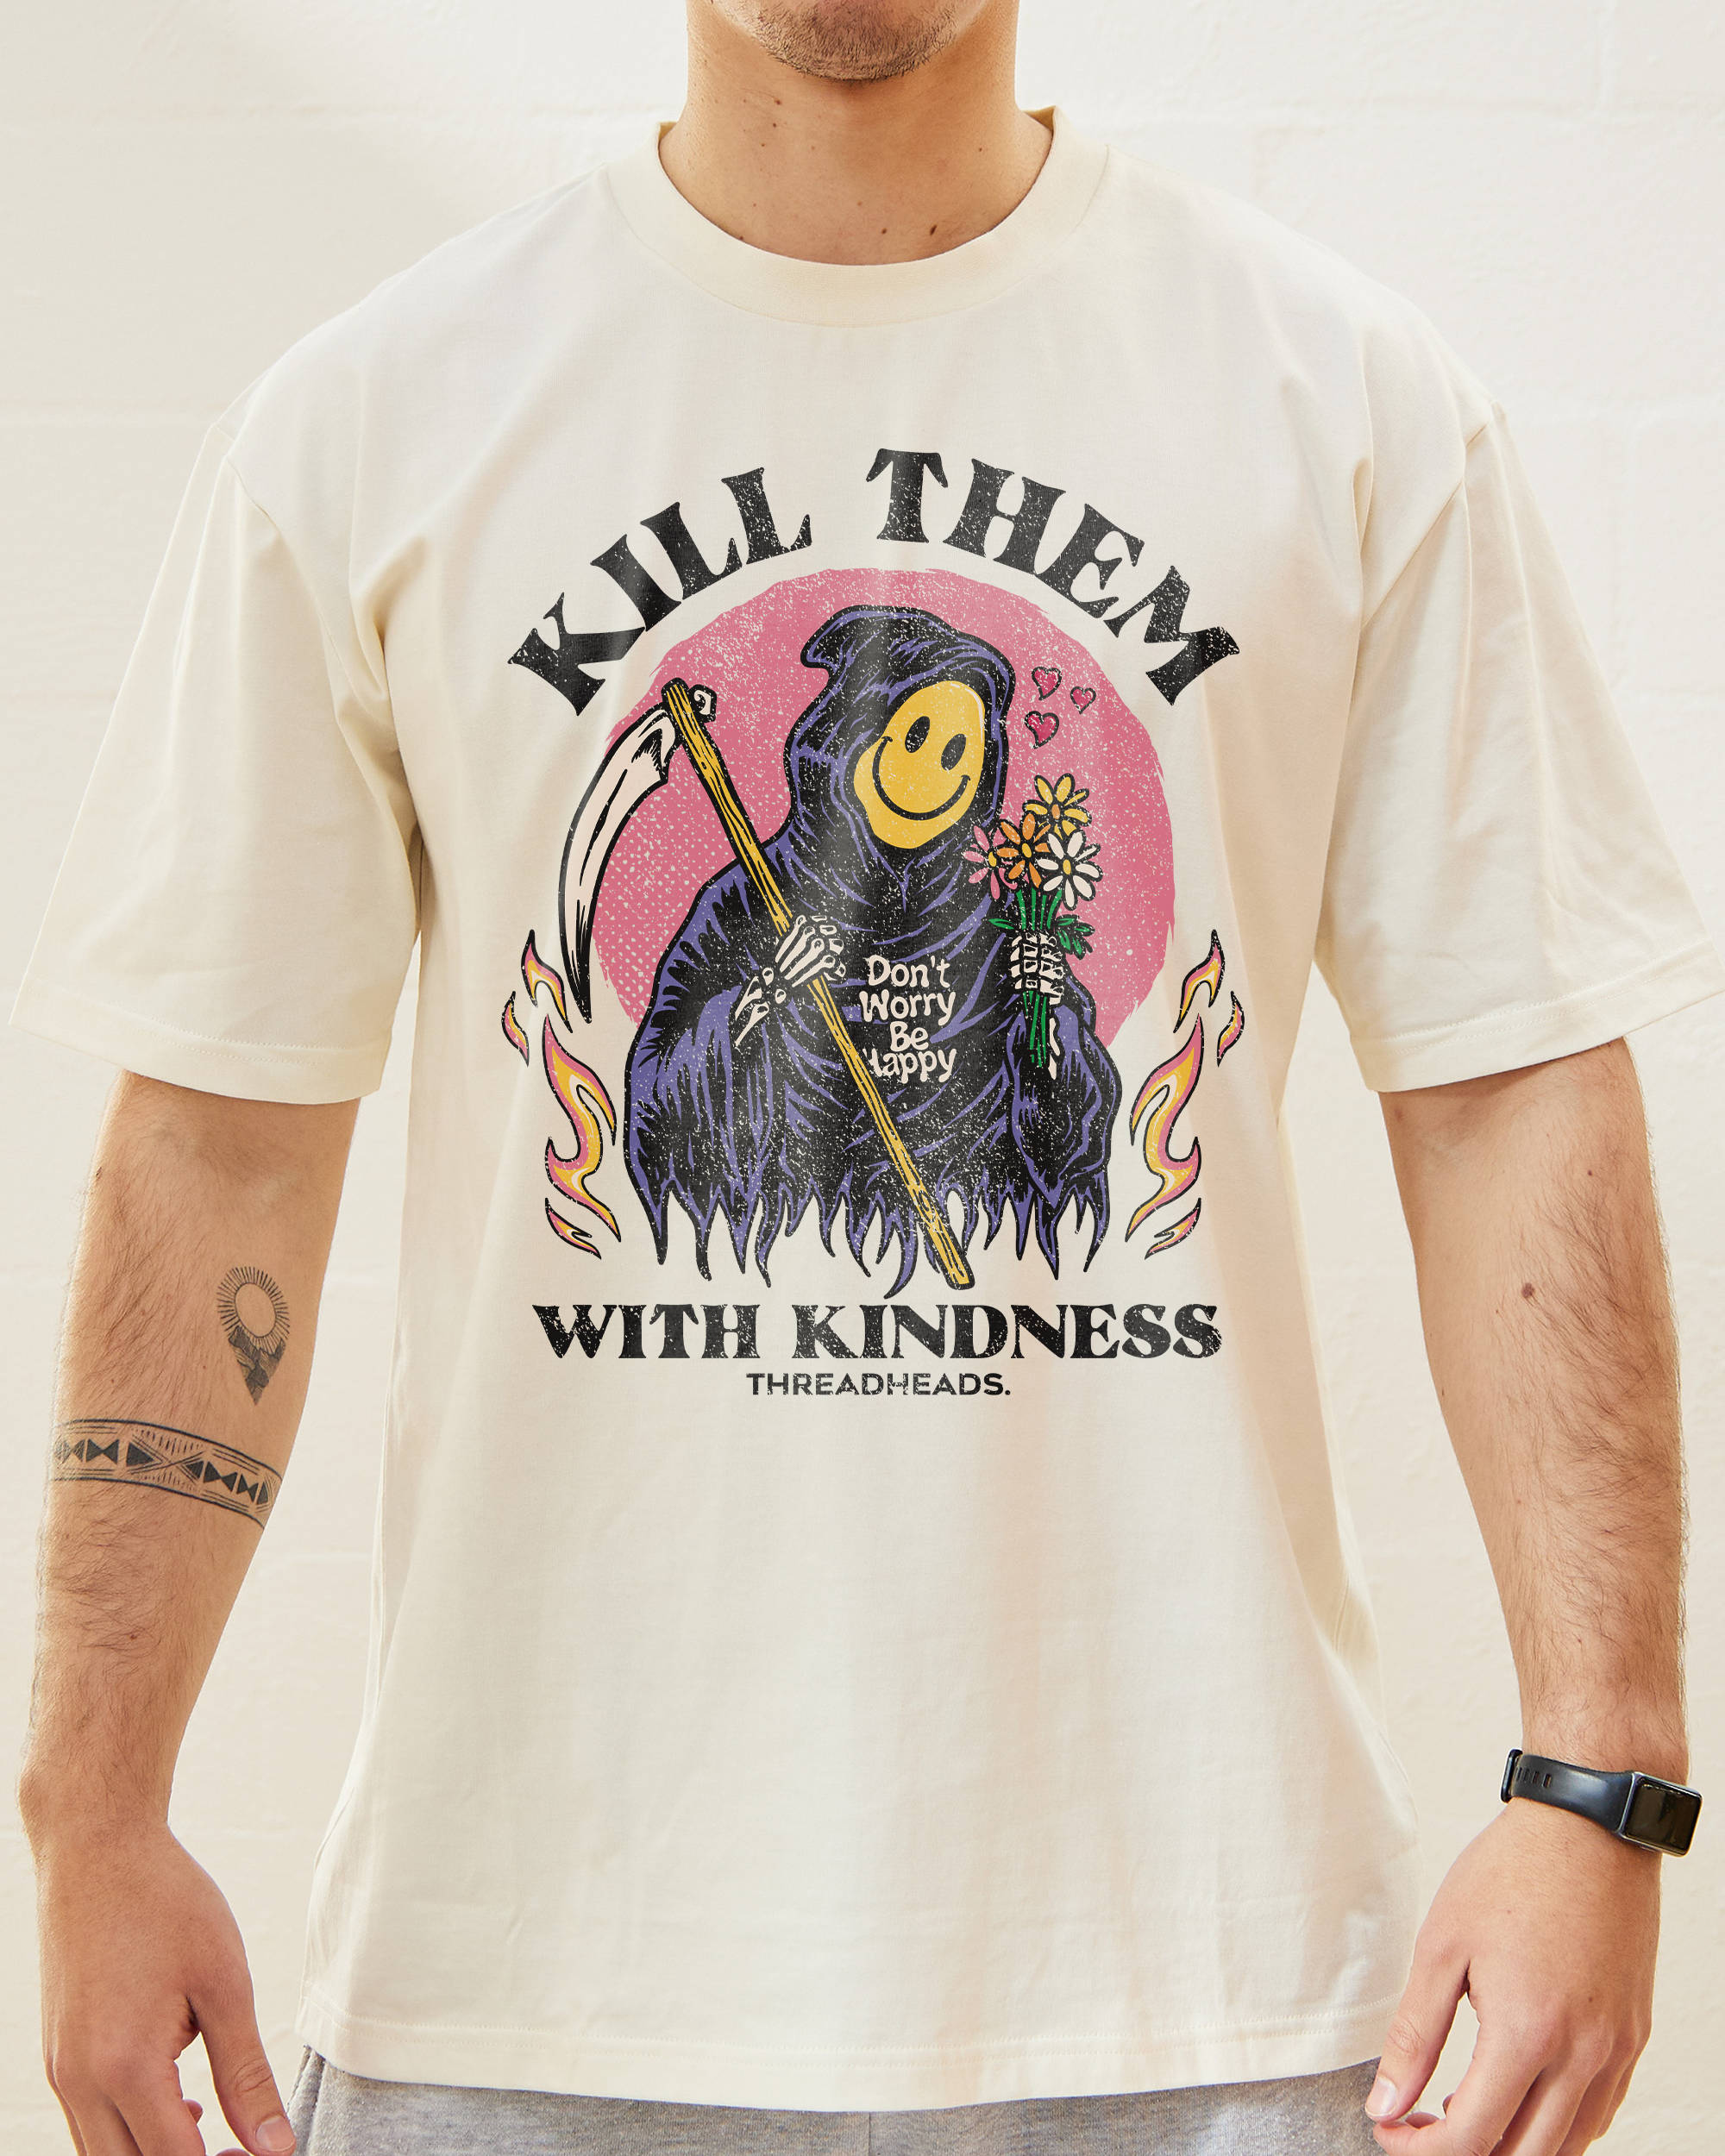 Kill Them With Kindness T-Shirt